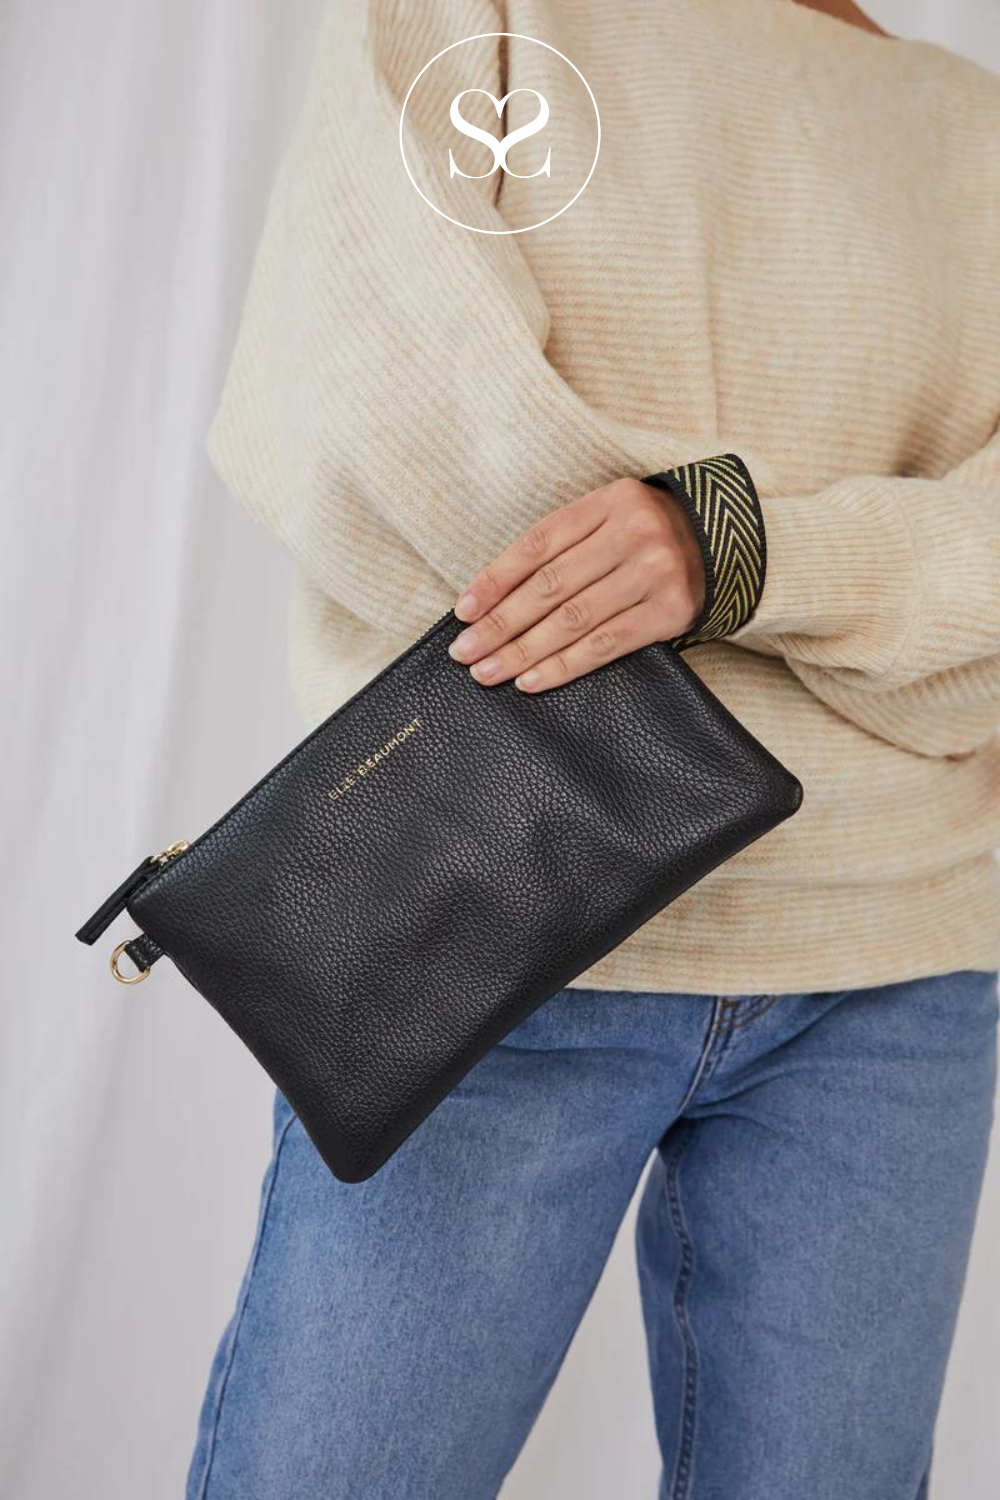 Elie beaumont black leather clutch bag / pouch bag